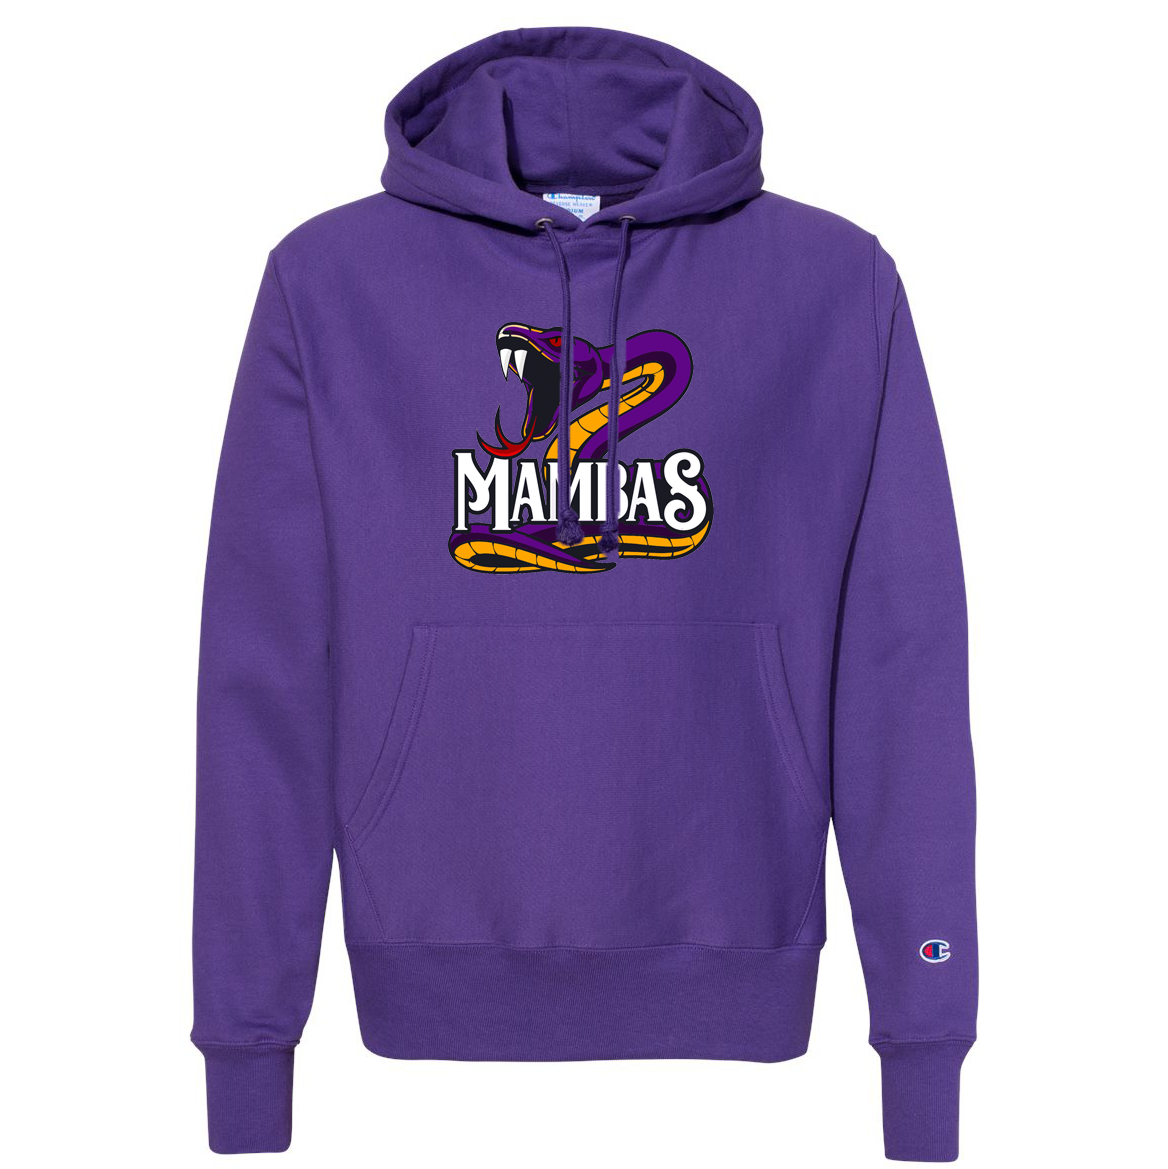 Mambas Basketball Champion Reverse Weave Sweatshirt